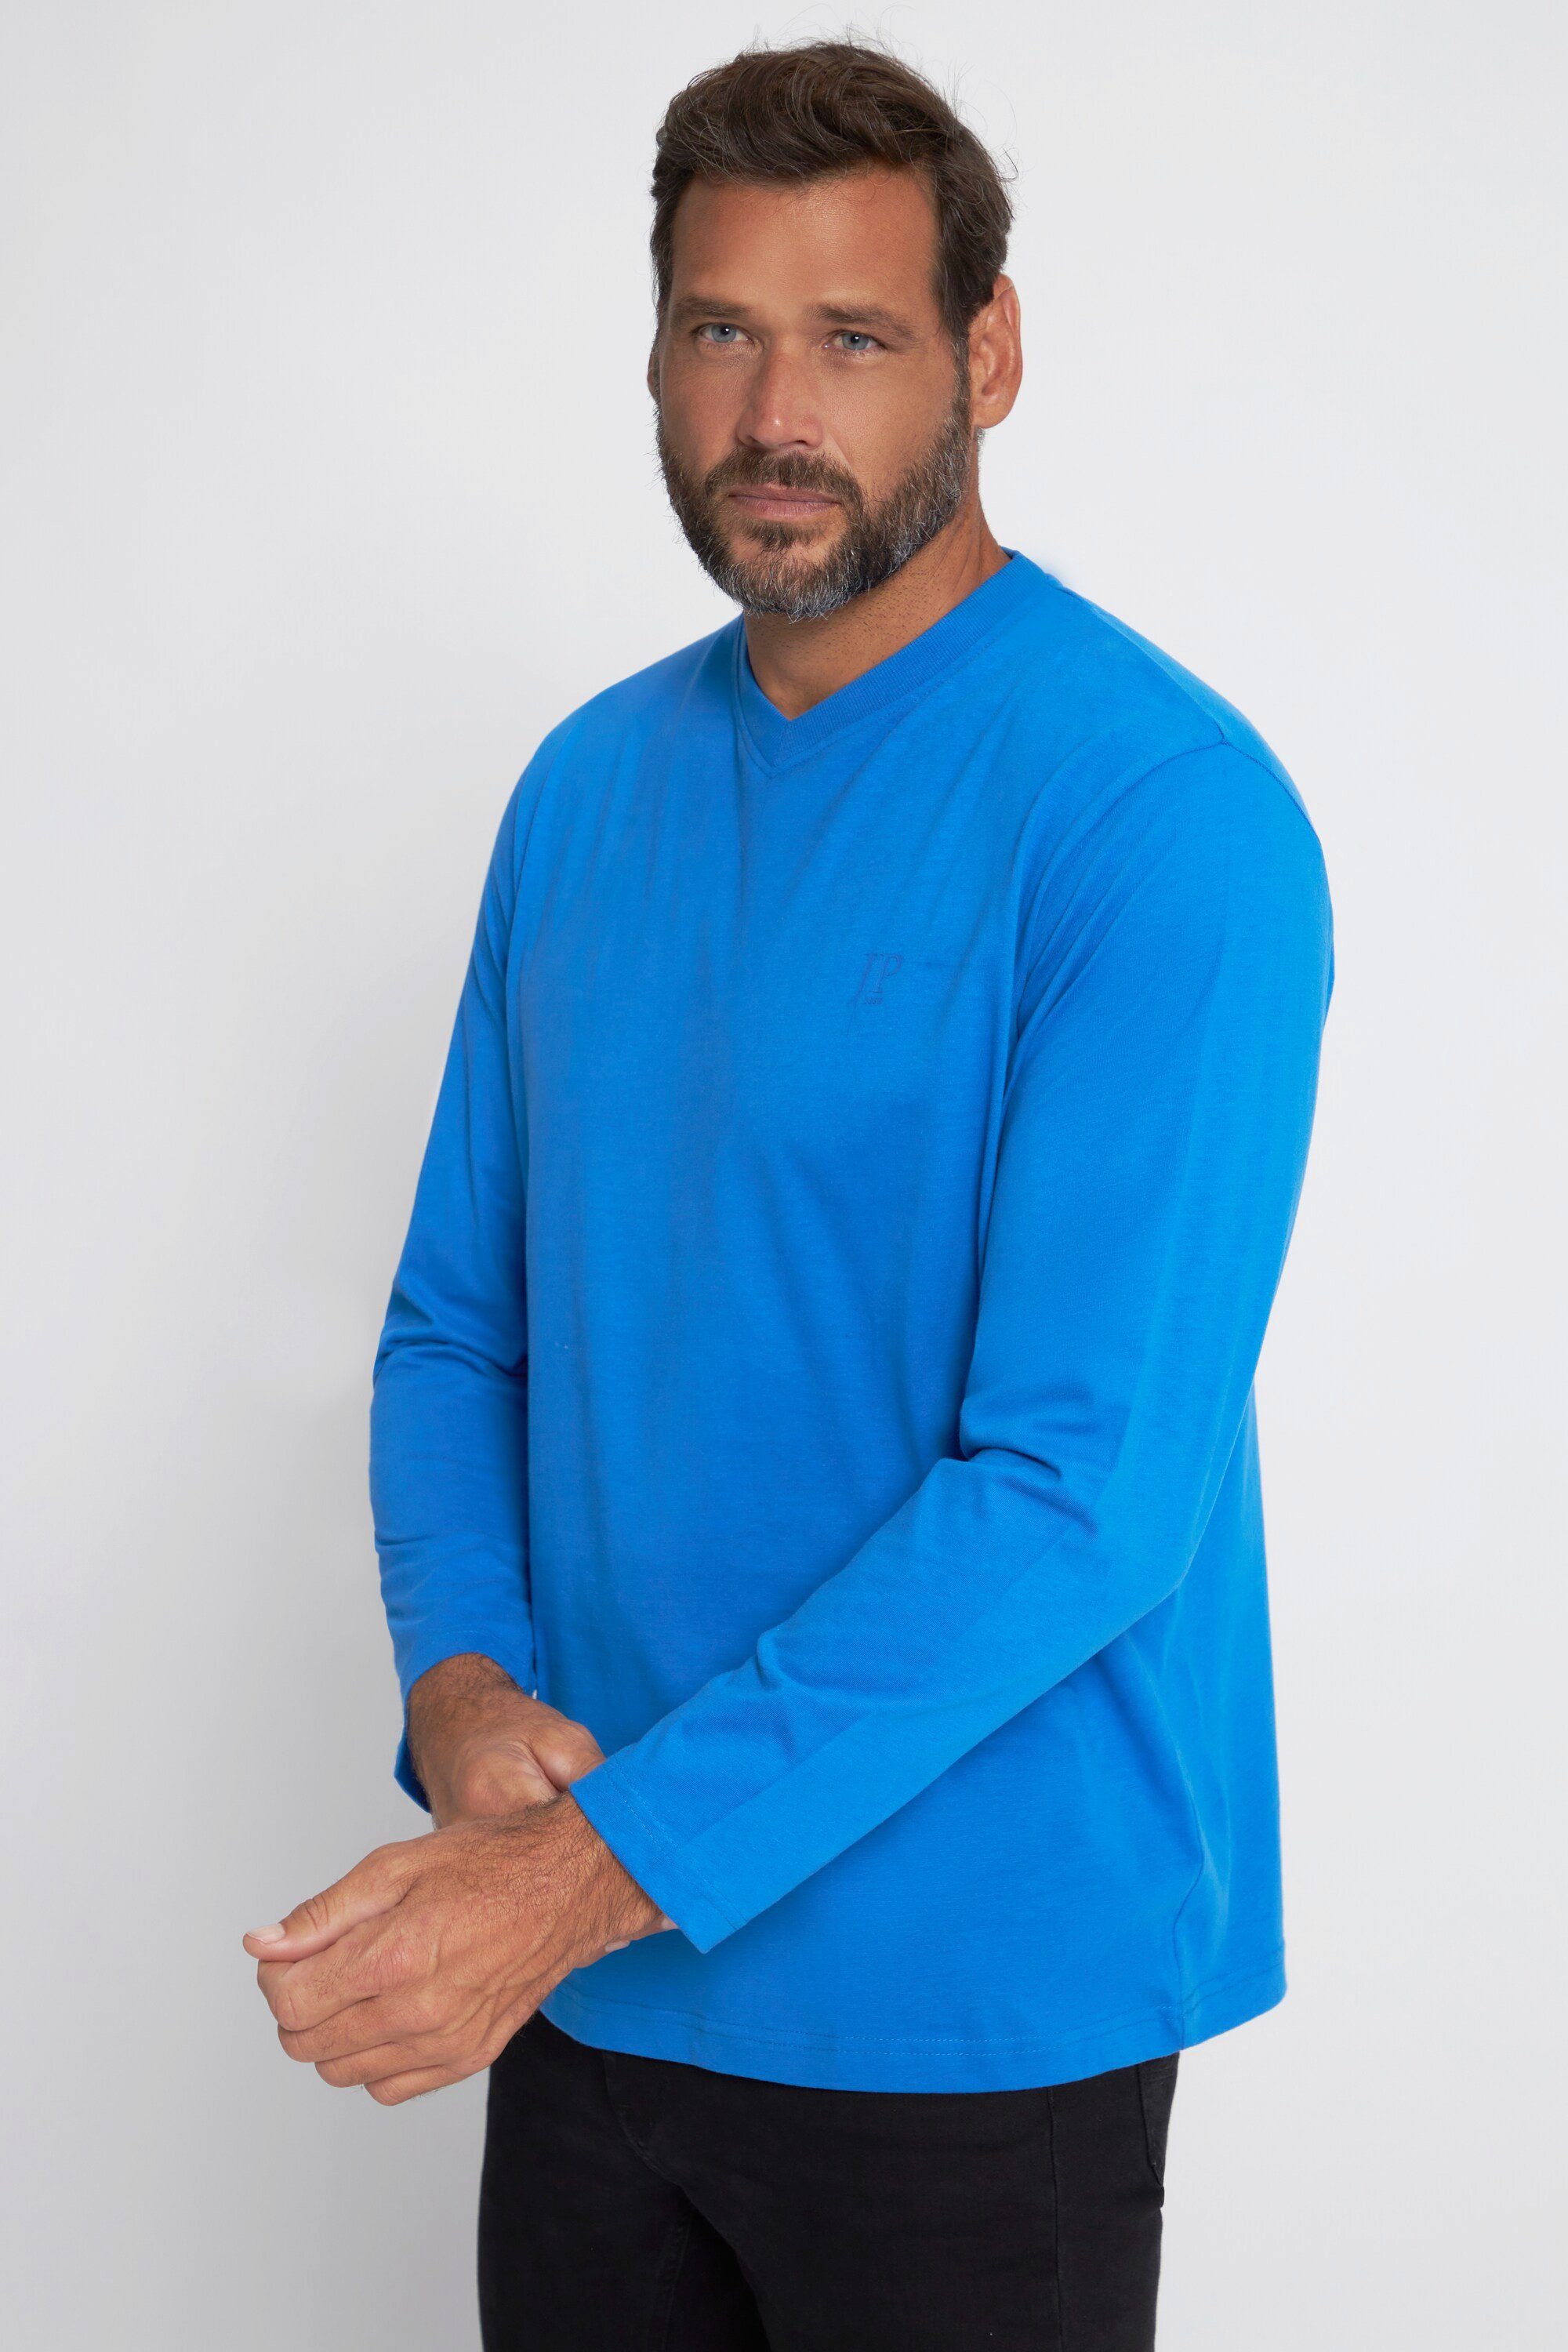 Langarm T-Shirt 8 bis XL T-Shirt JP1880 V-Ausschnitt lapisblau